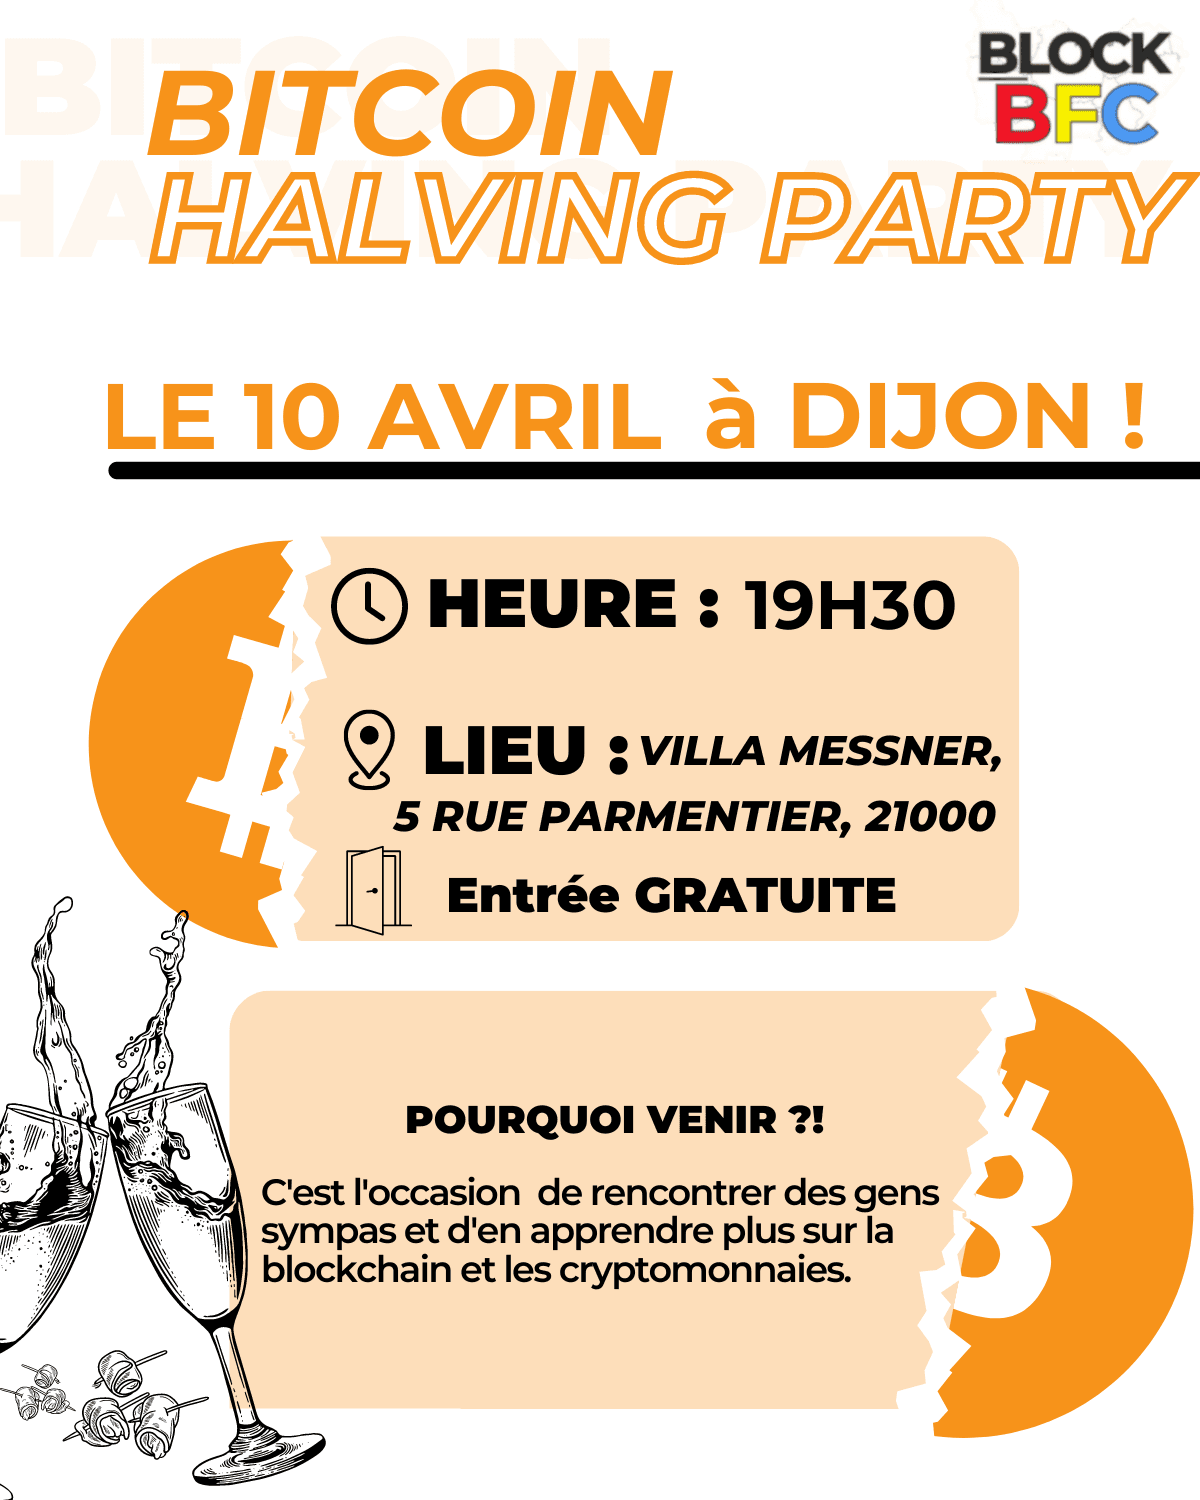 Halving Party Dijon